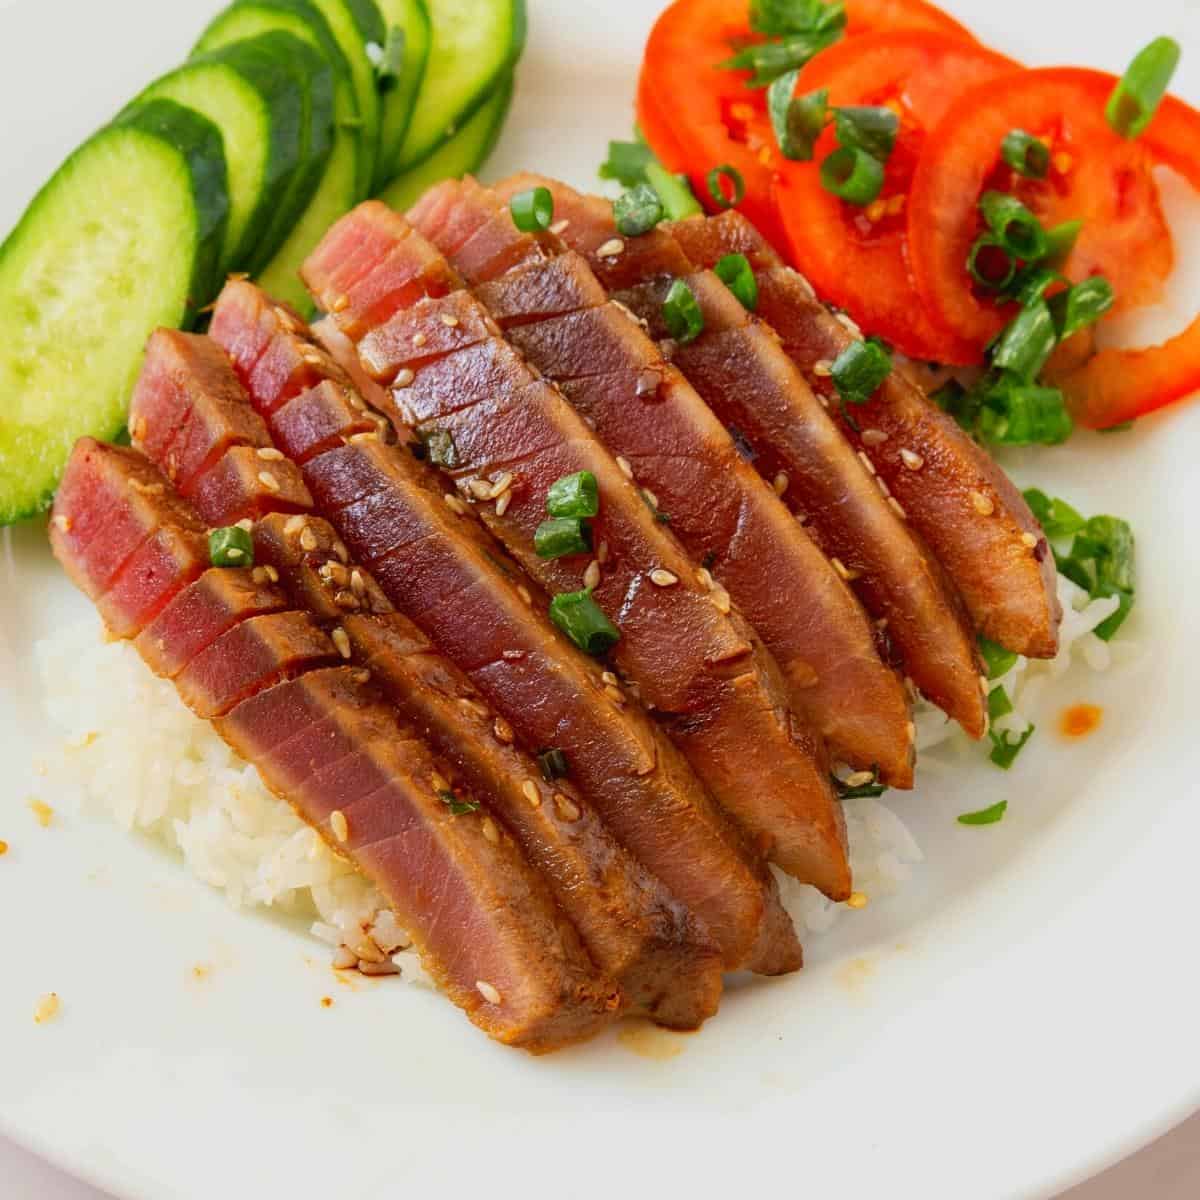 Tuna steak served on white steamed rice.